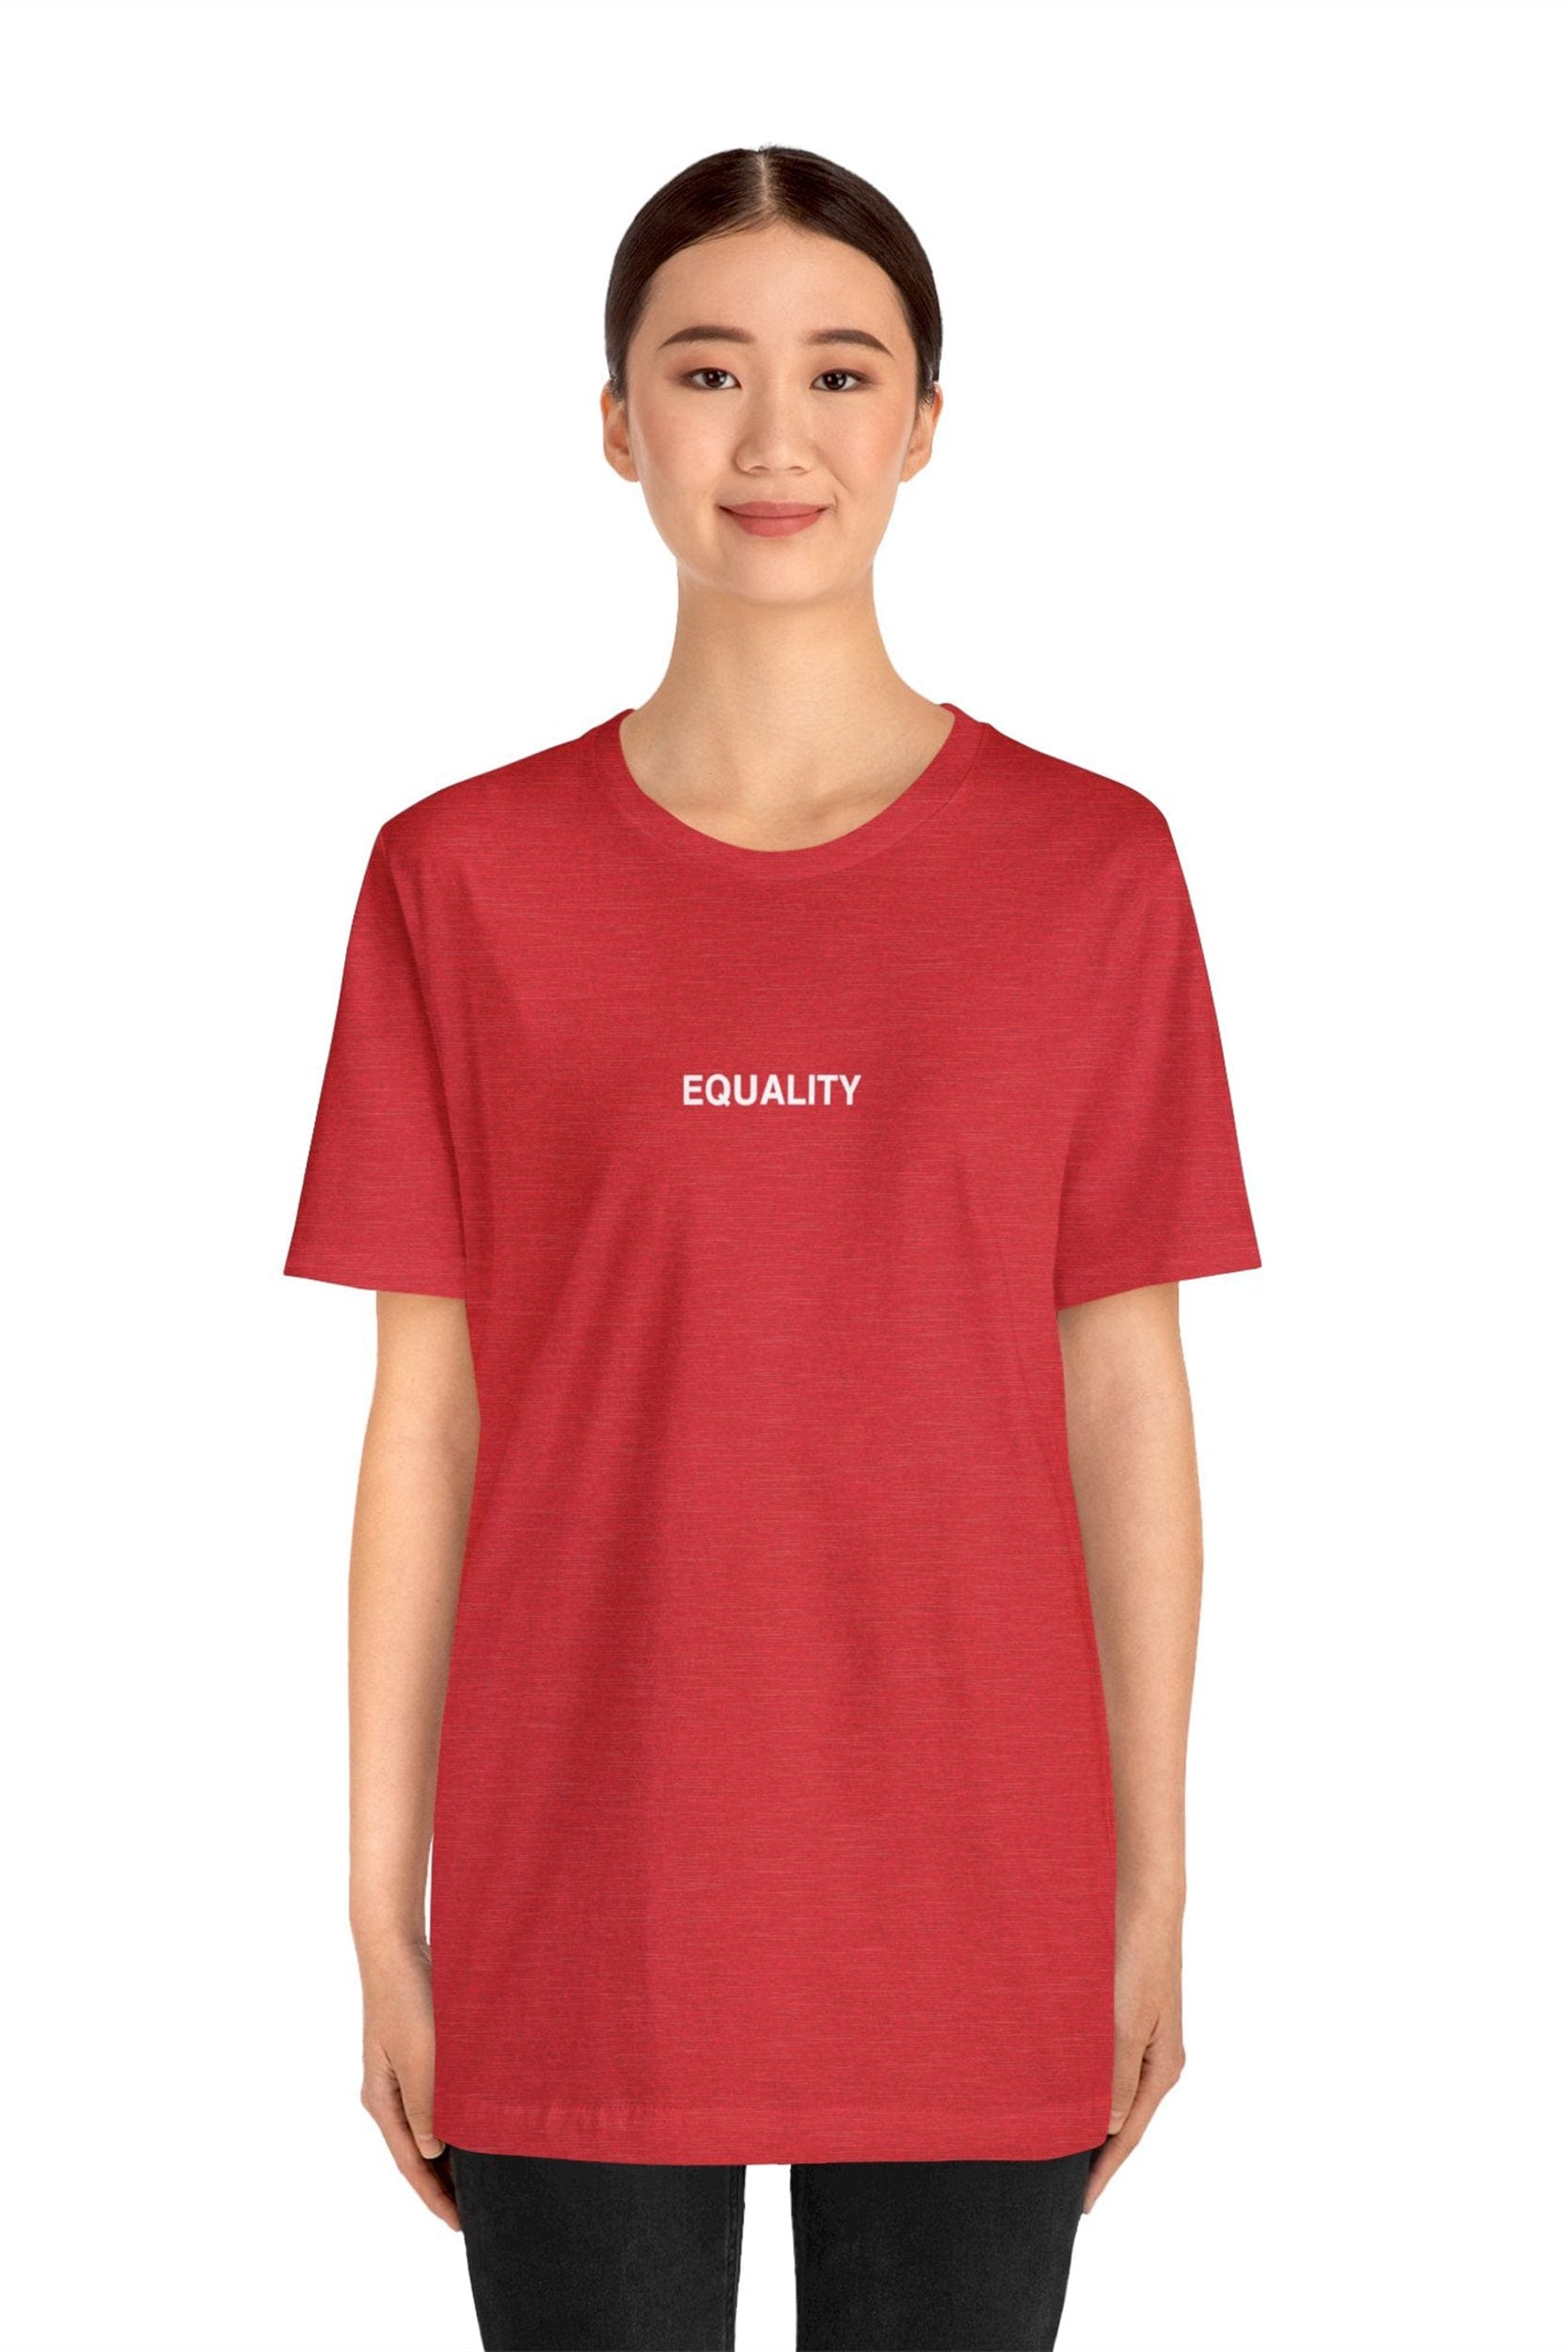 "EQUALITY" T-Shirt